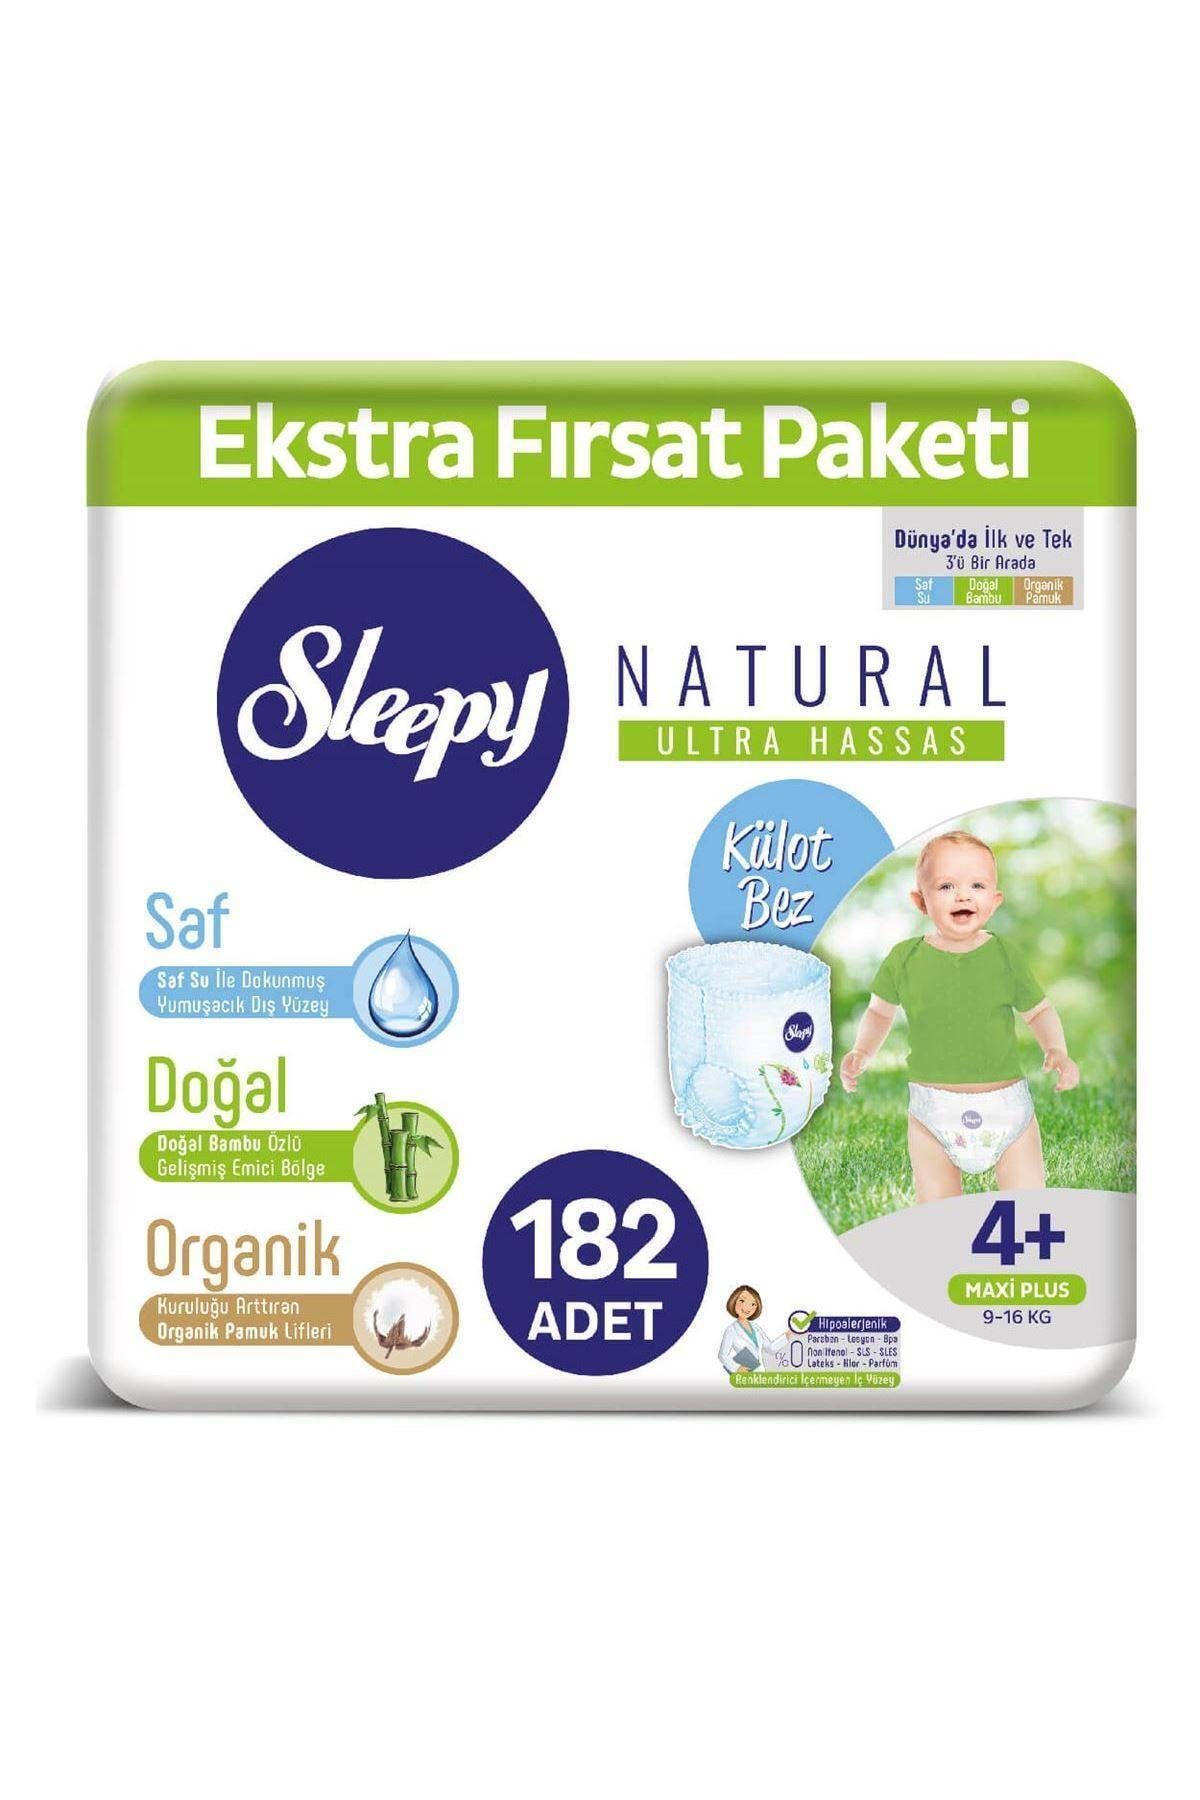 Sleepy Natural Külot Bez 4 Numara Maxi Plus Ekstra Fırsat Paketi 182 Adet